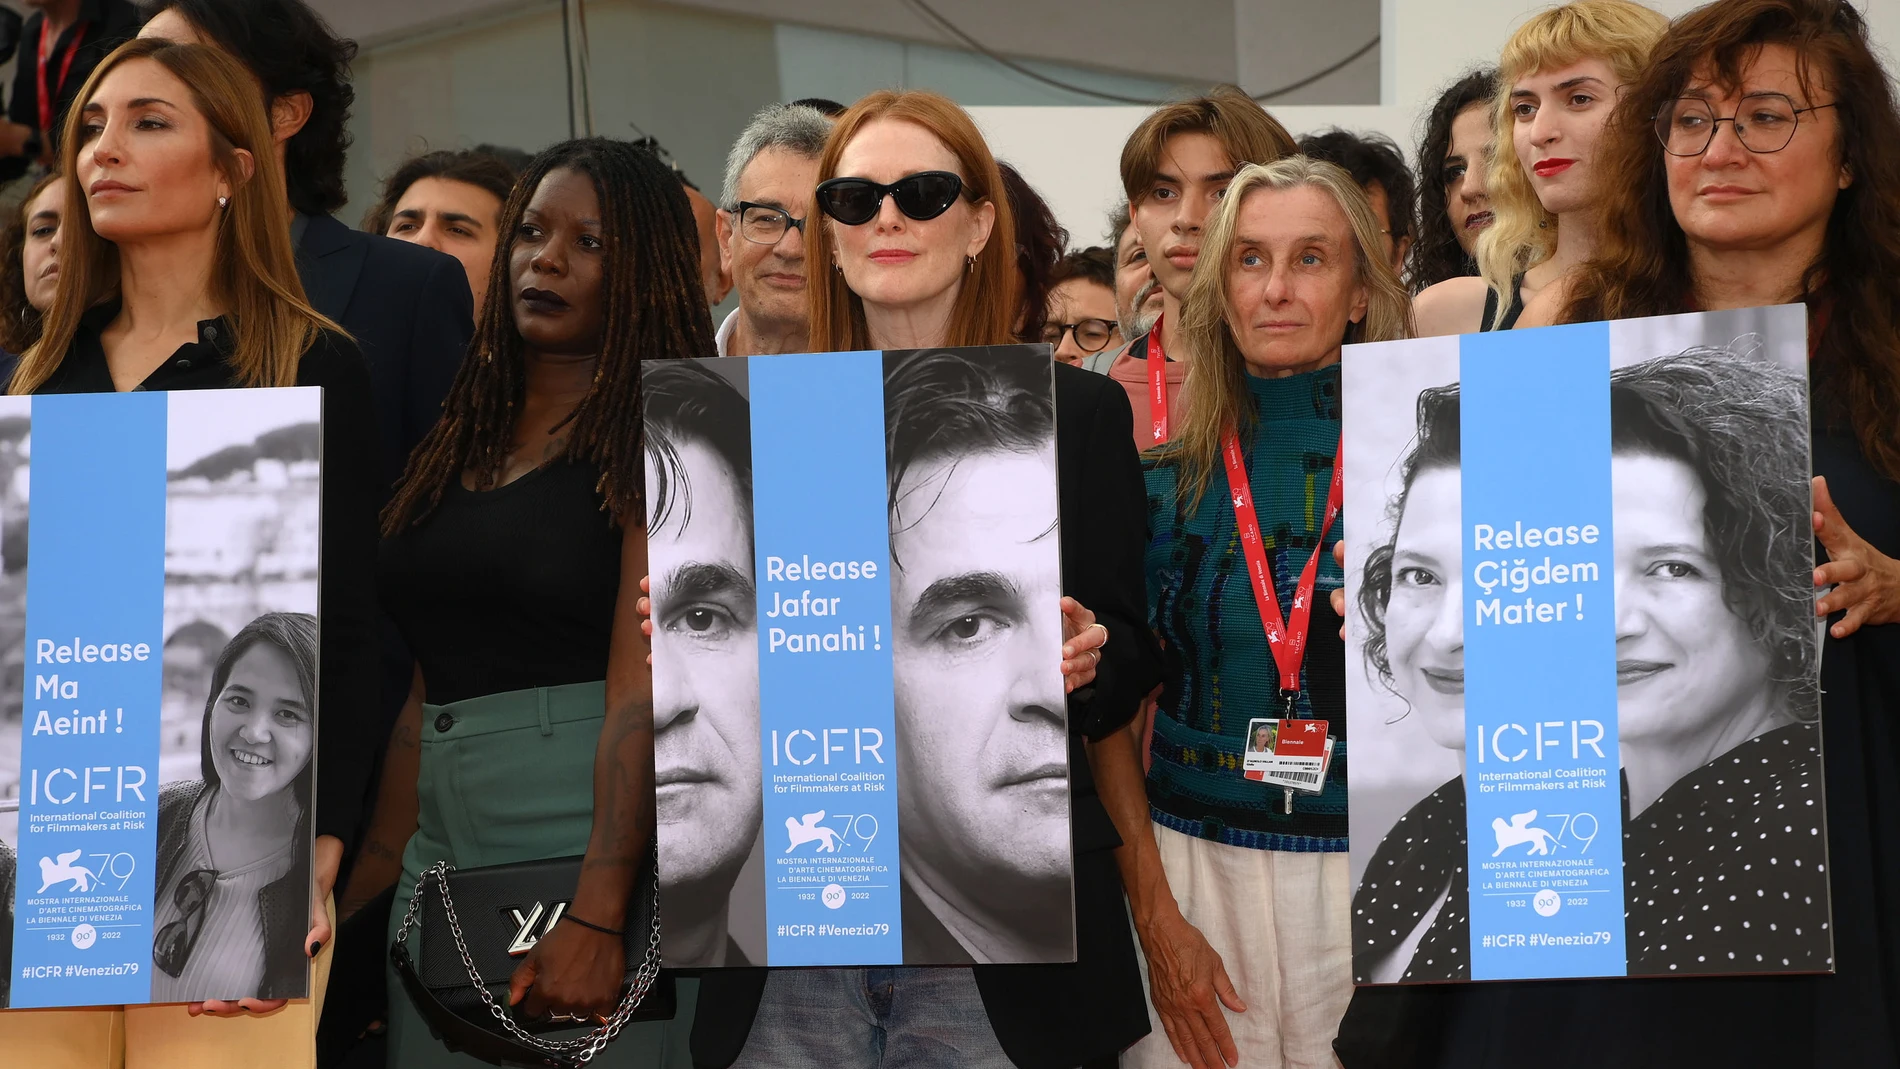 De izda. a dcha.: Audrey Diwan, Julianne Moore (sosteniendo un cartel reivindicativo con el rostro de Jafar Panahi) e Isabel Coixet, en la Mostra